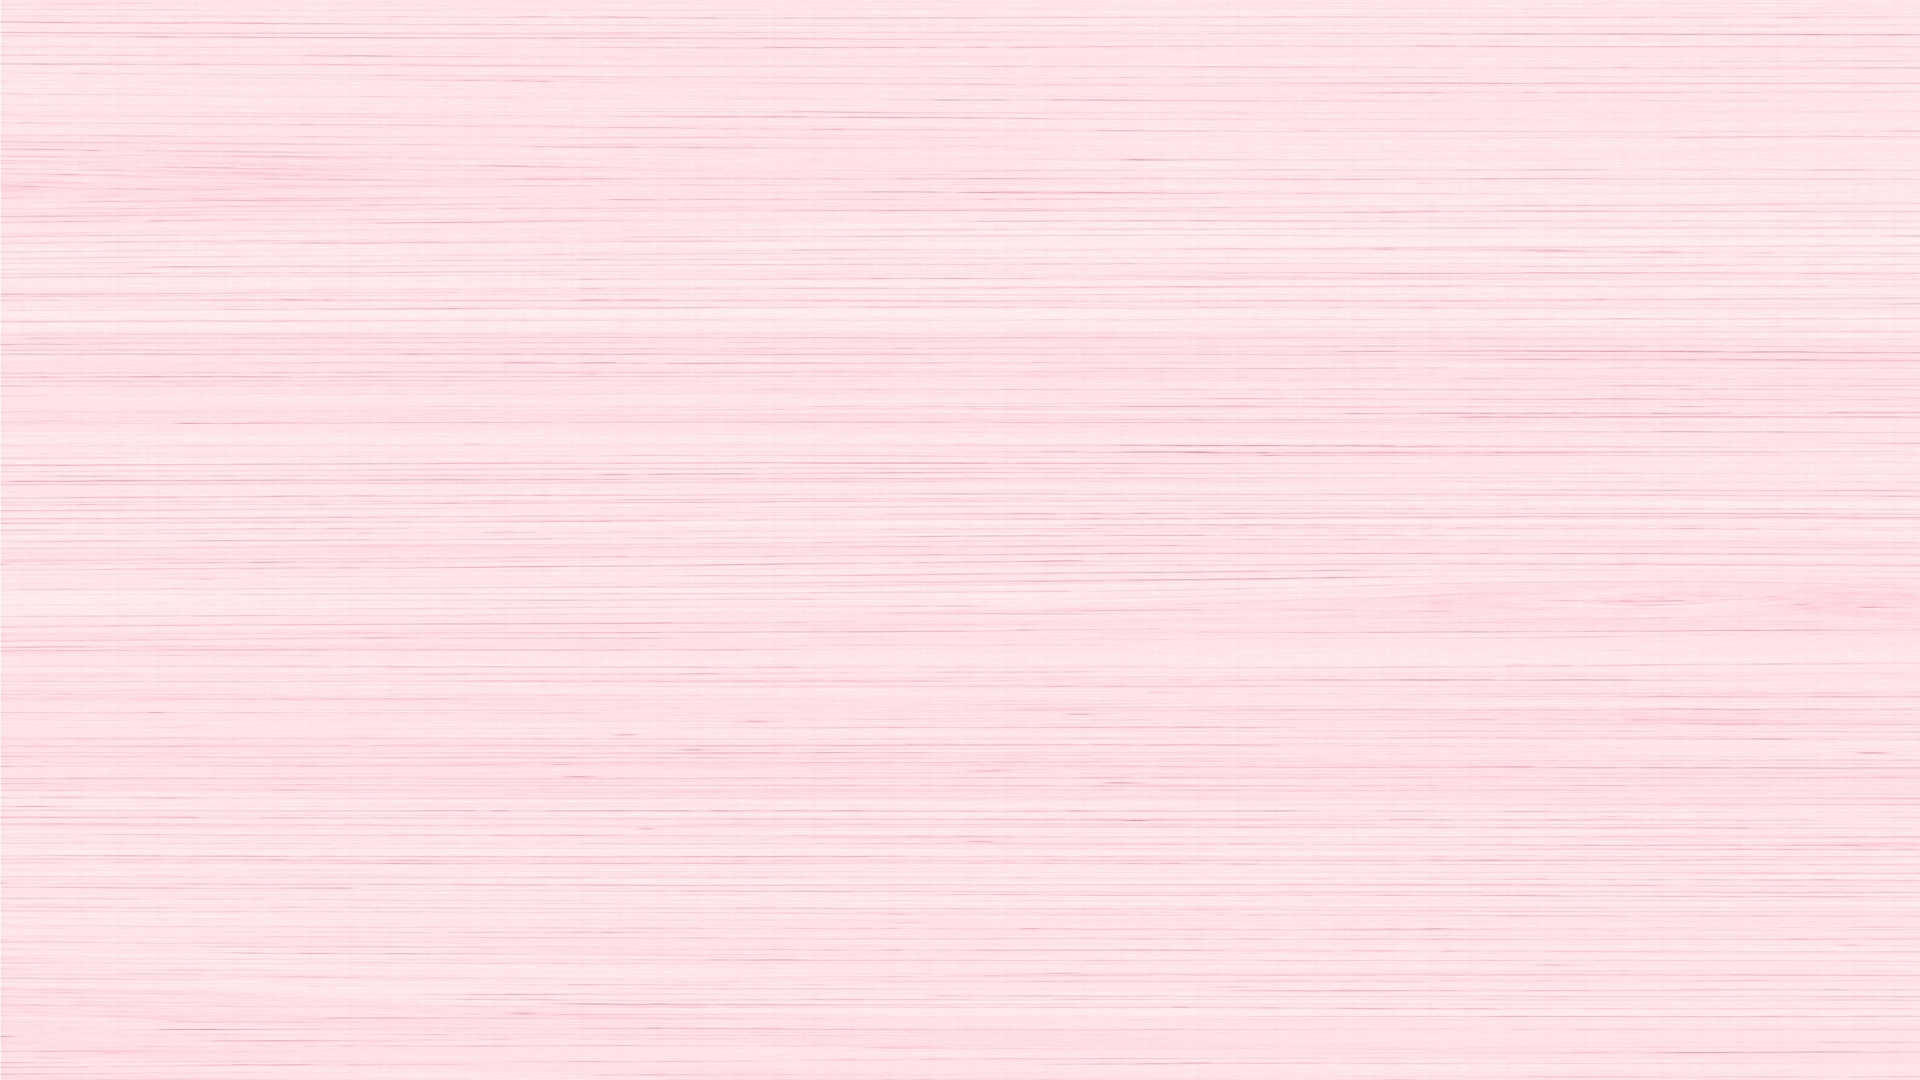 Hình nền màu hồng nhạt là sự kết hợp tuyệt vời giữa sự ngọt ngào và tinh tế. Với sắc màu nhẹ nhàng và đầy dịu dàng, hình nền này sẽ khiến trái tim bạn đong đầy hạnh phúc. Đừng bỏ lỡ cơ hội khám phá hình ảnh liên quan để tạo nên một không gian sống động và sáng tạo.